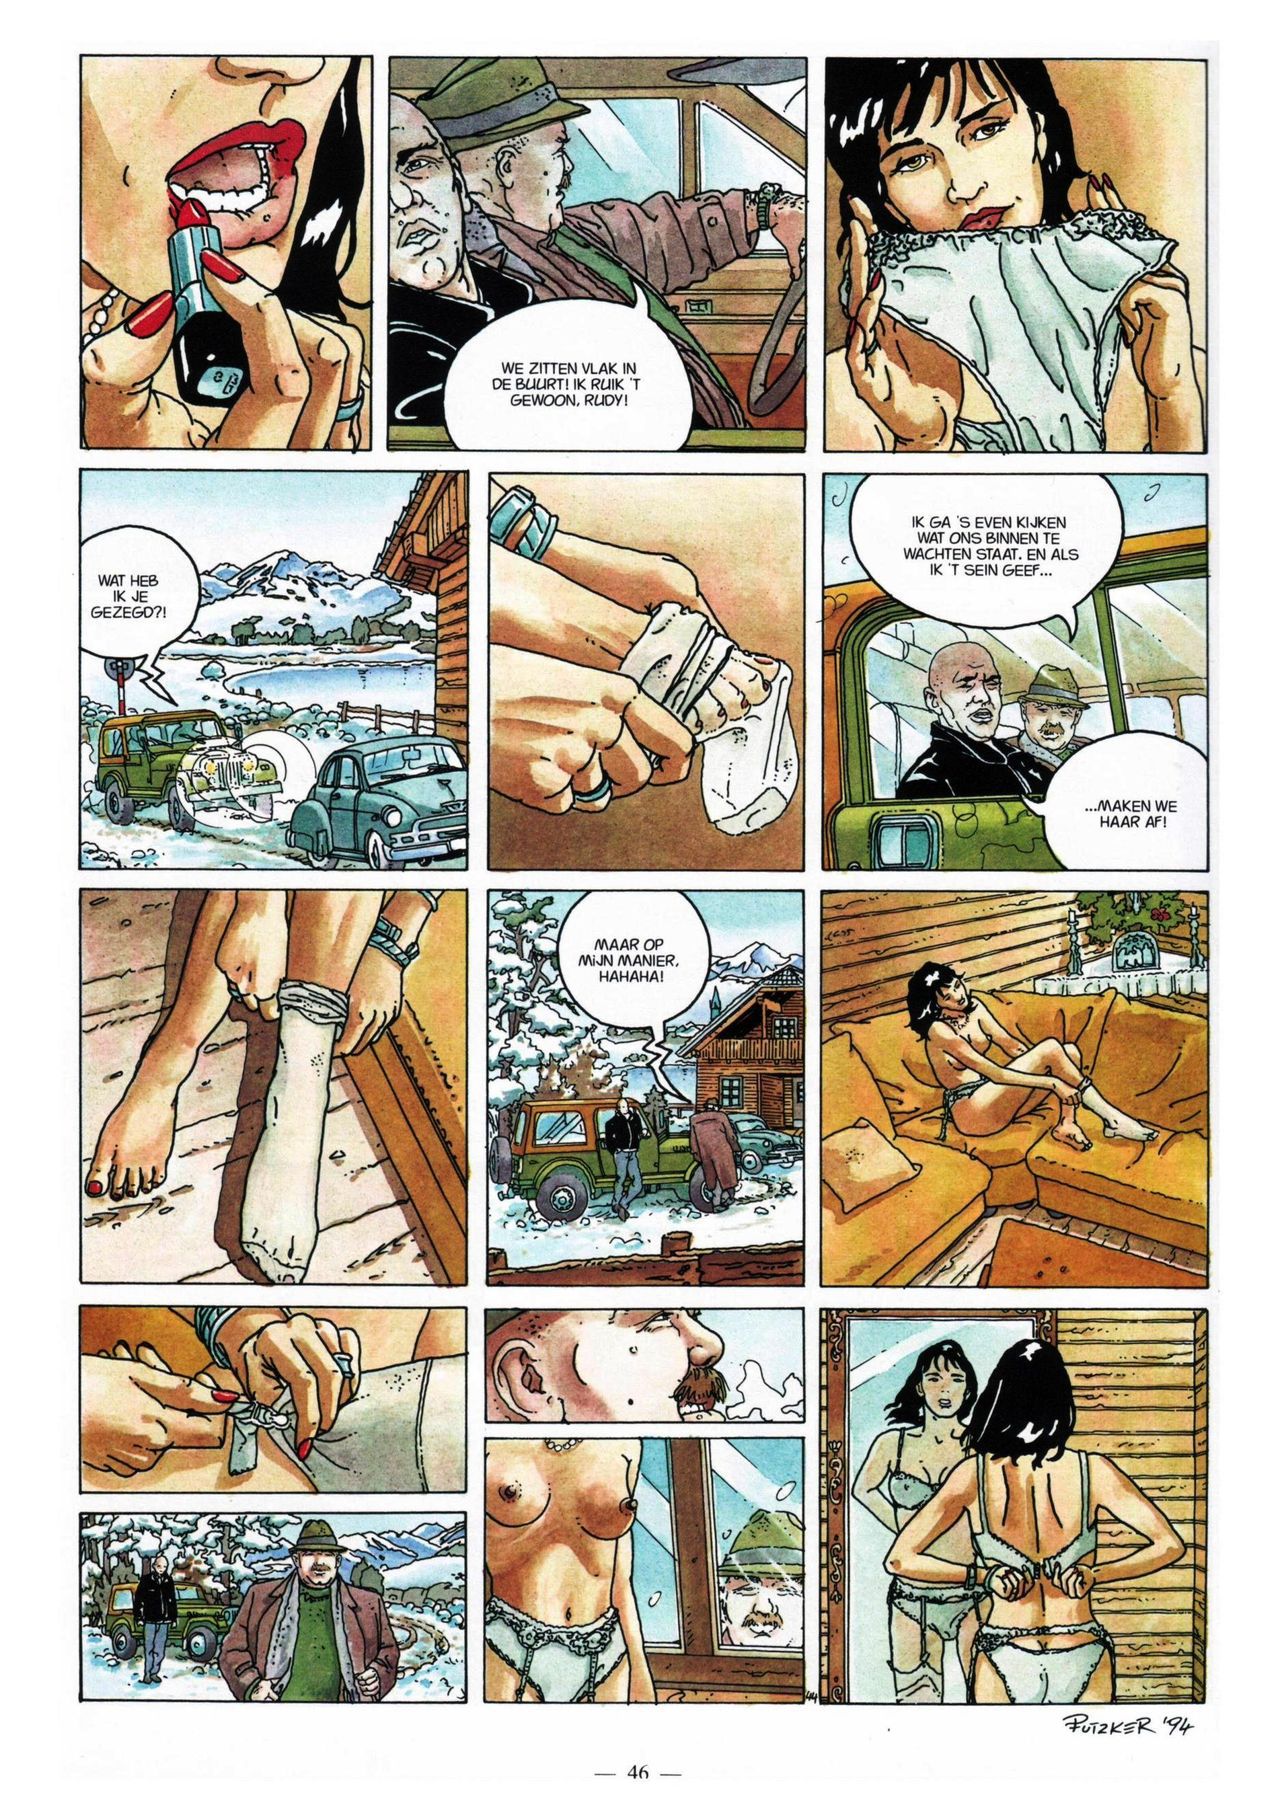 Anna Stein - 03 - De Laatste Alpengloed (Dutch) Engelstalige strips die op deze site staan, hier is de Nederlandse uitgave! 46